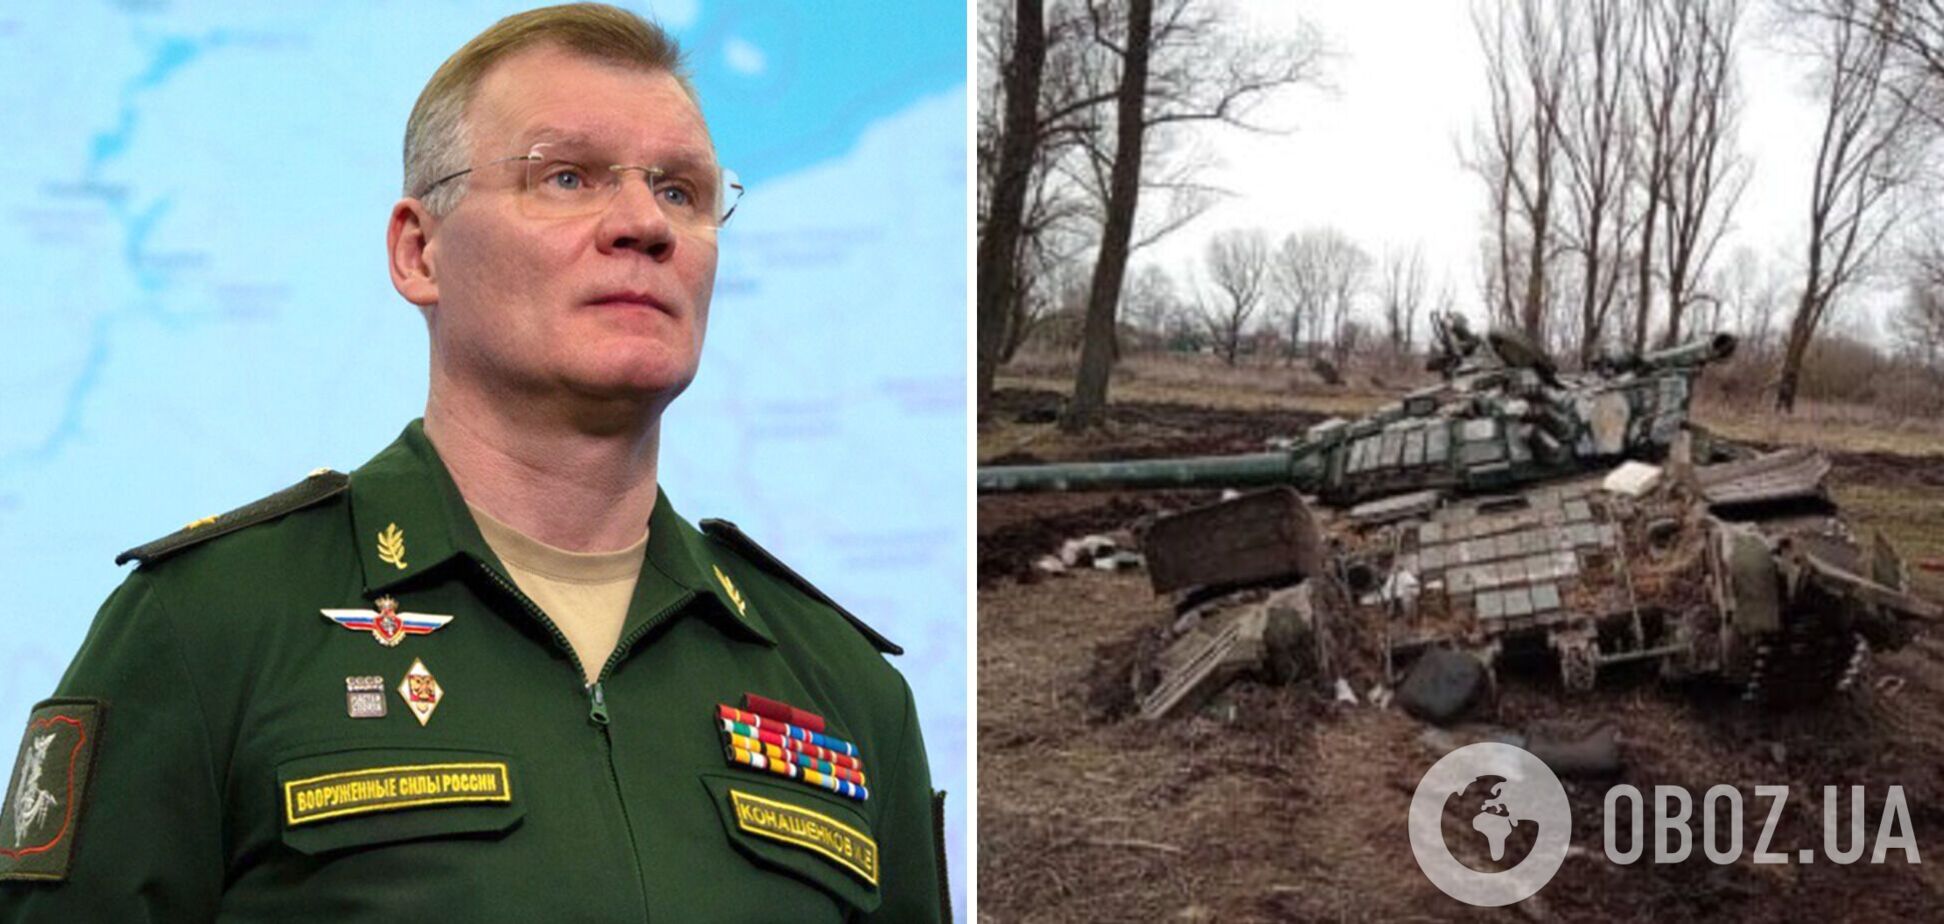 В Украине ликвидировали офицера МЧС РФ, выполнявшего 'гуманитарную миссию'. Фото